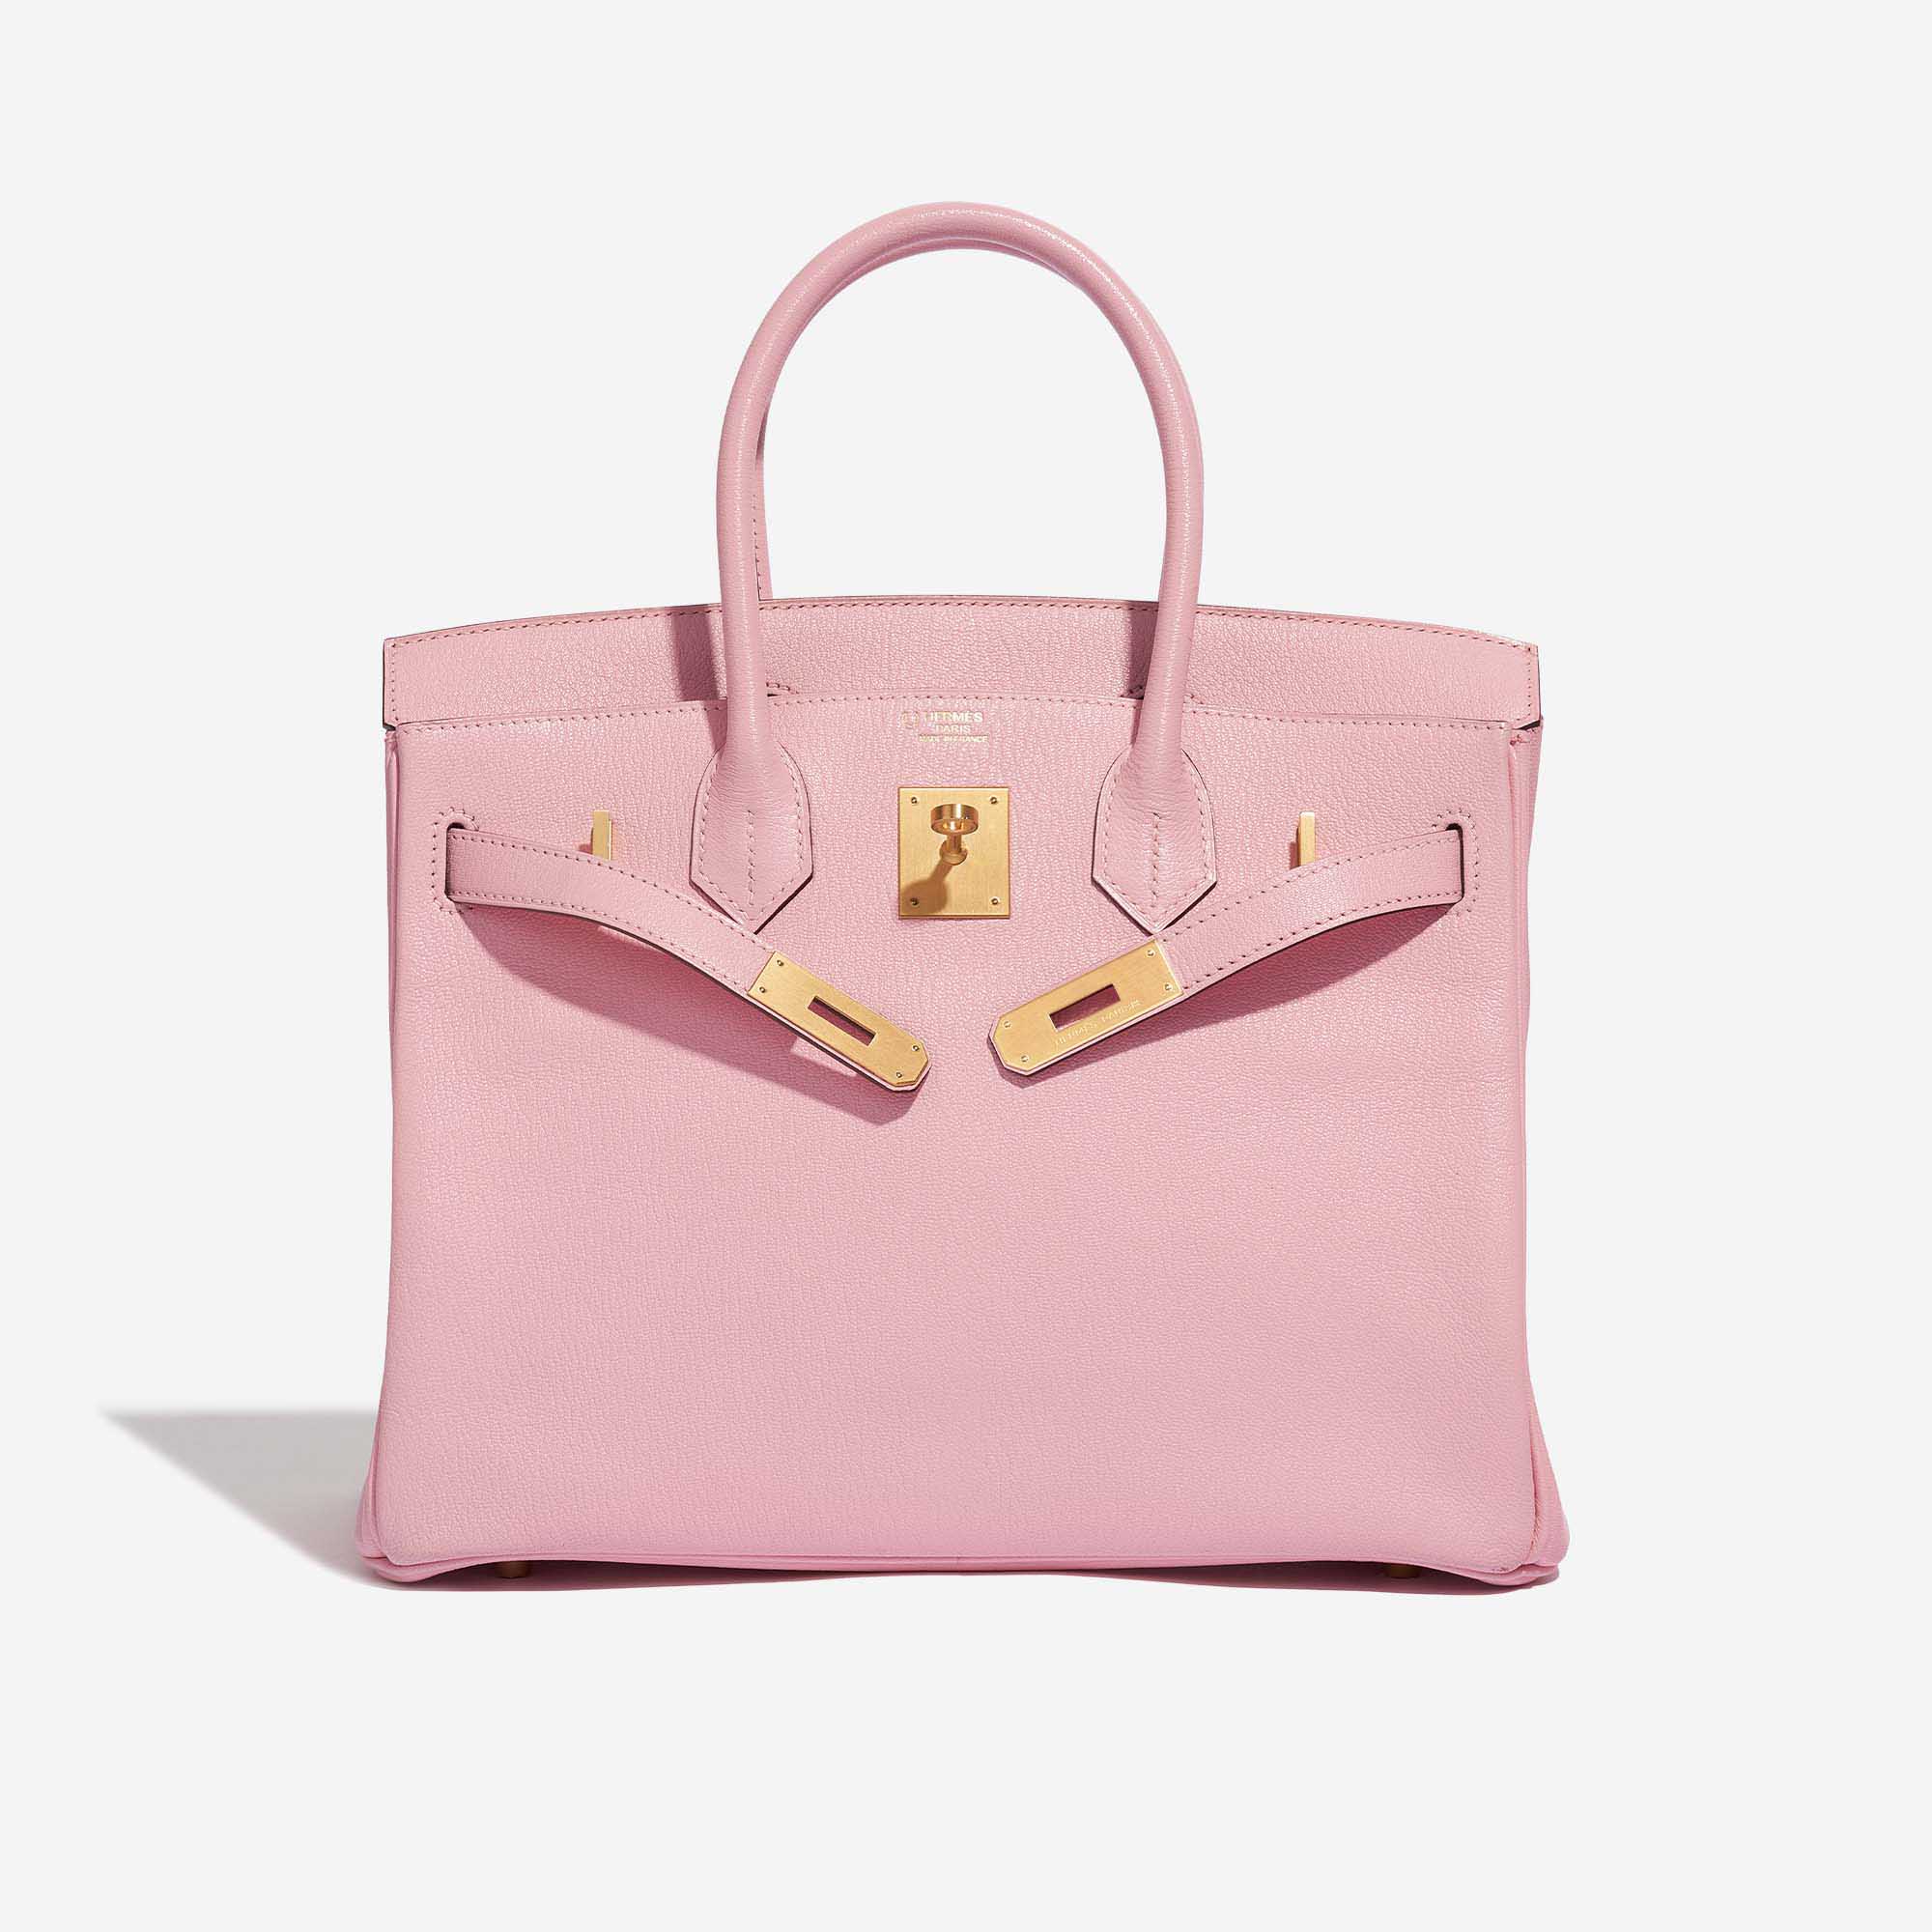 Pre-owned Hermès Tasche Birkin 30 Custom Made Chèvre Mysore Rose Sakura / Vermillion Pink, Rose Front Open | Verkaufen Sie Ihre Designer-Tasche auf Saclab.com